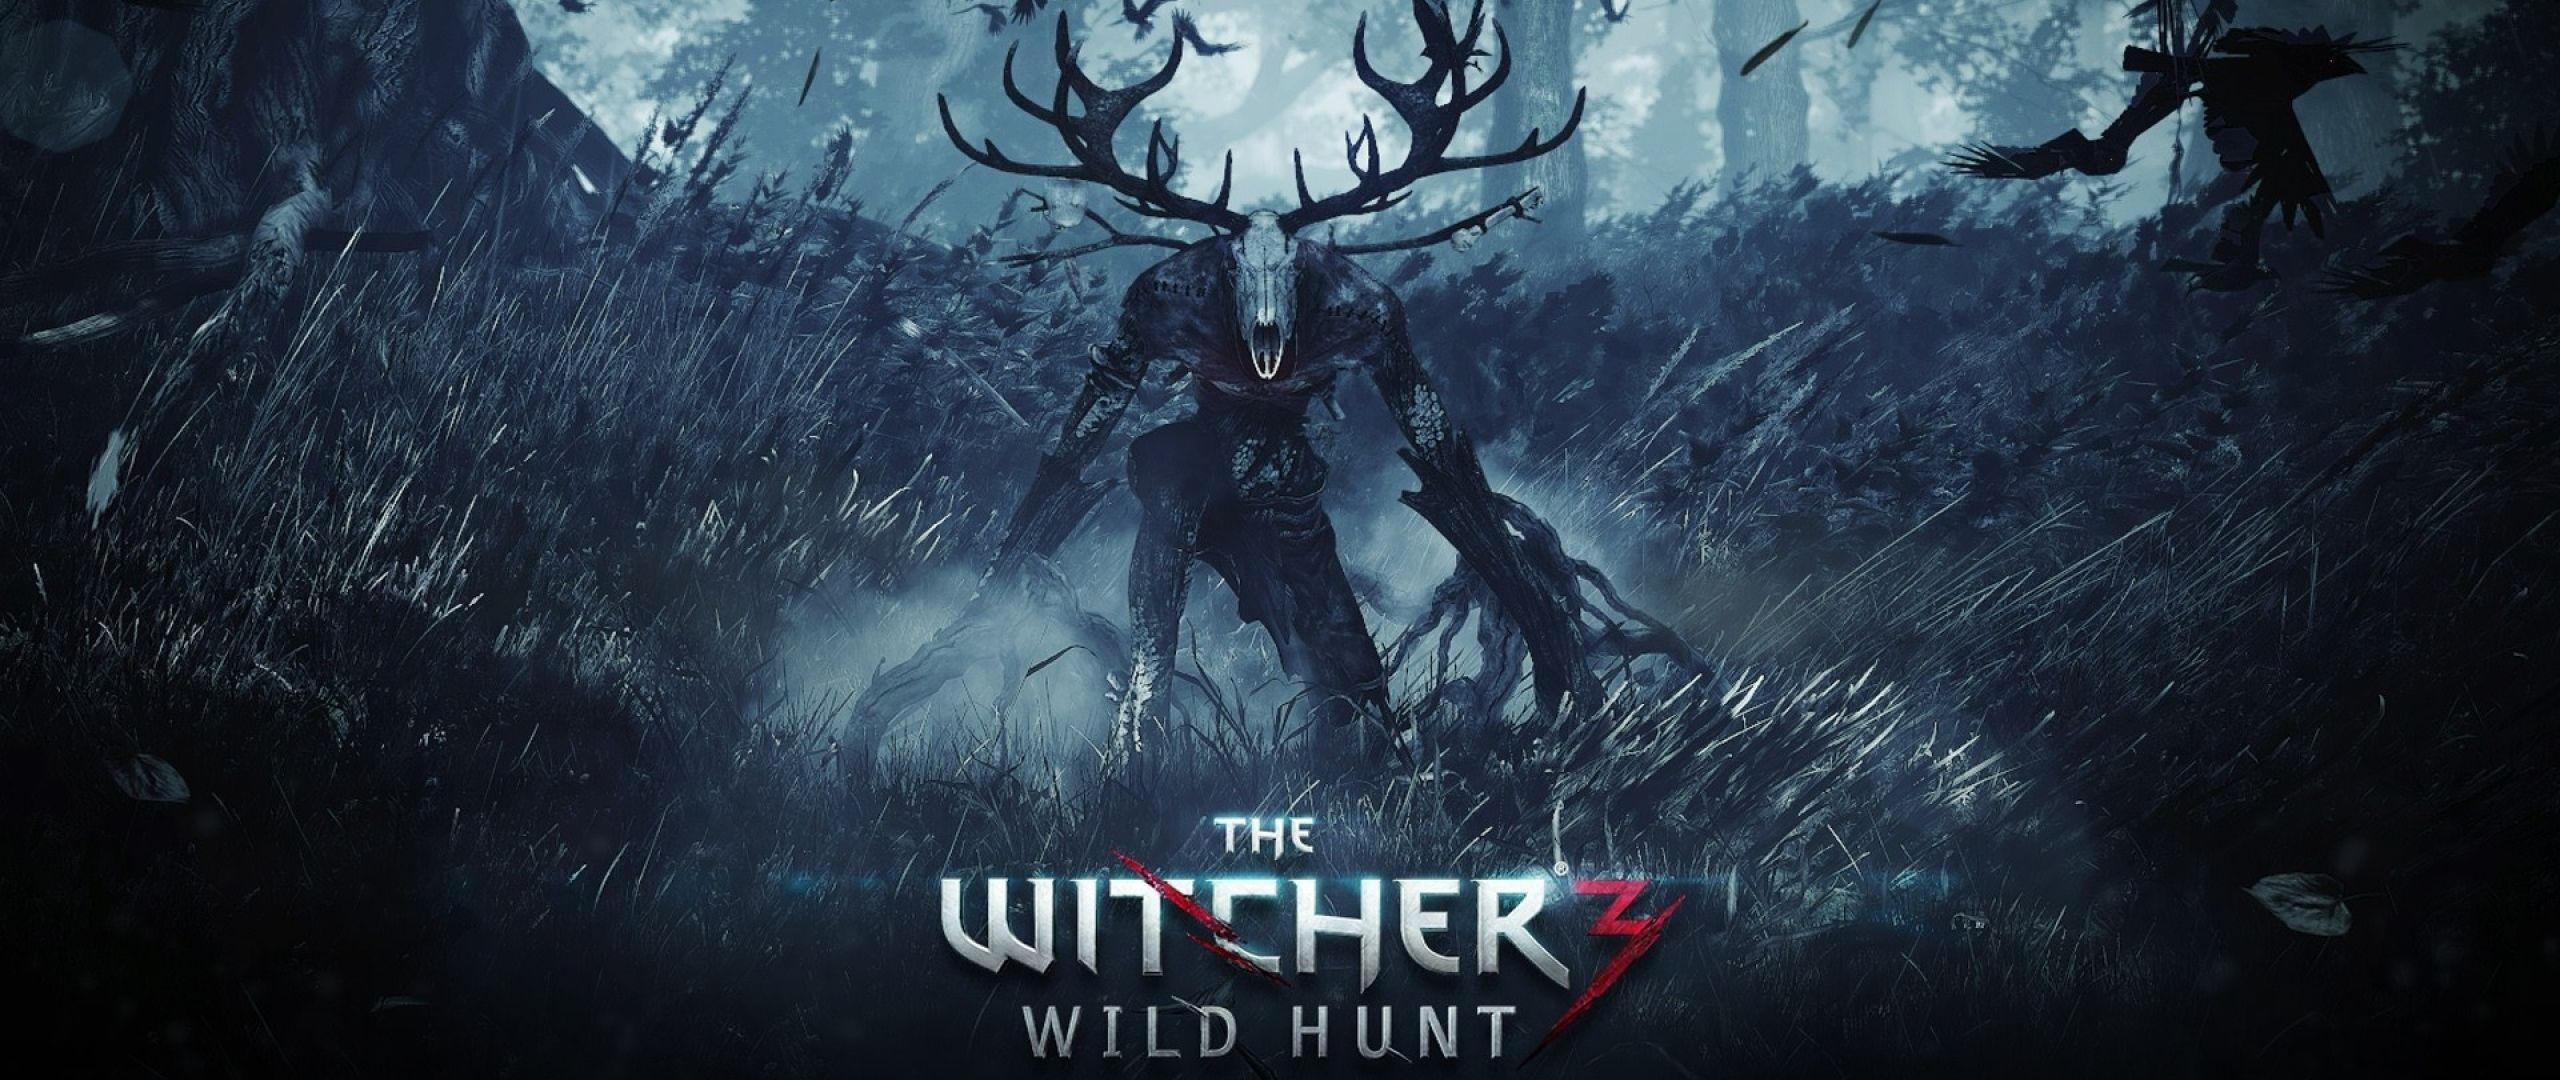 21:9 TV The witcher 3 wild hunt Wallpaper HD, Desktop